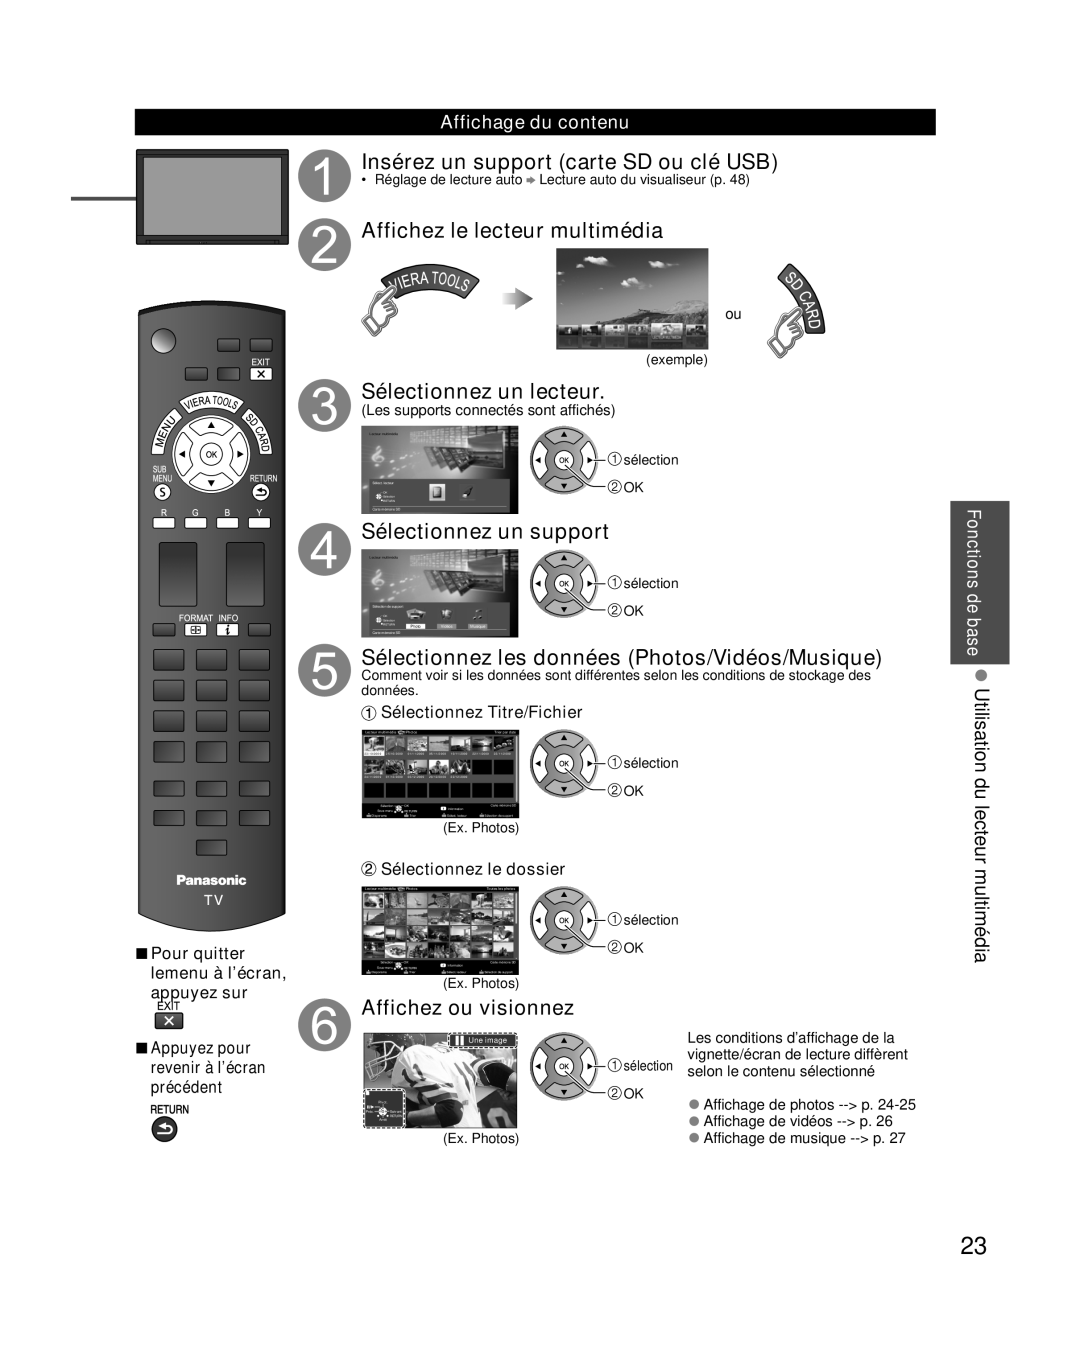 Panasonic TC-L37E3 Insérez un support carte SD ou clé USB, Affichez le lecteur multimédia, Sélectionnez un lecteur 